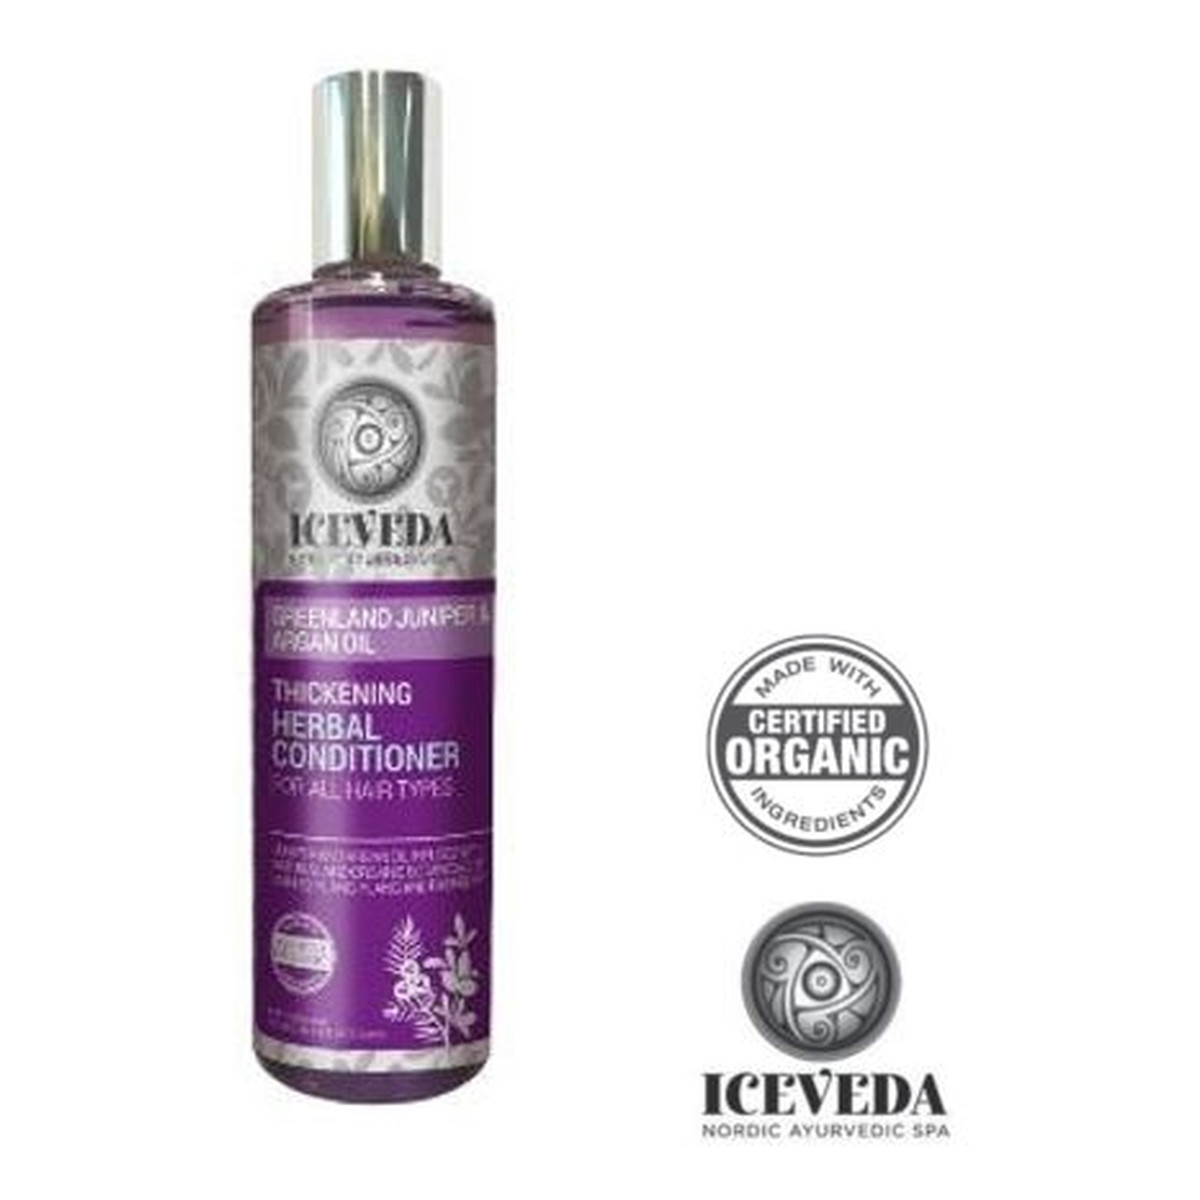 Iceveda Jałowiec grenlandzki & Olej arganowy Zwiększający gęstość włosów ziołowy balsam do wszystkich typów włosów 280ml